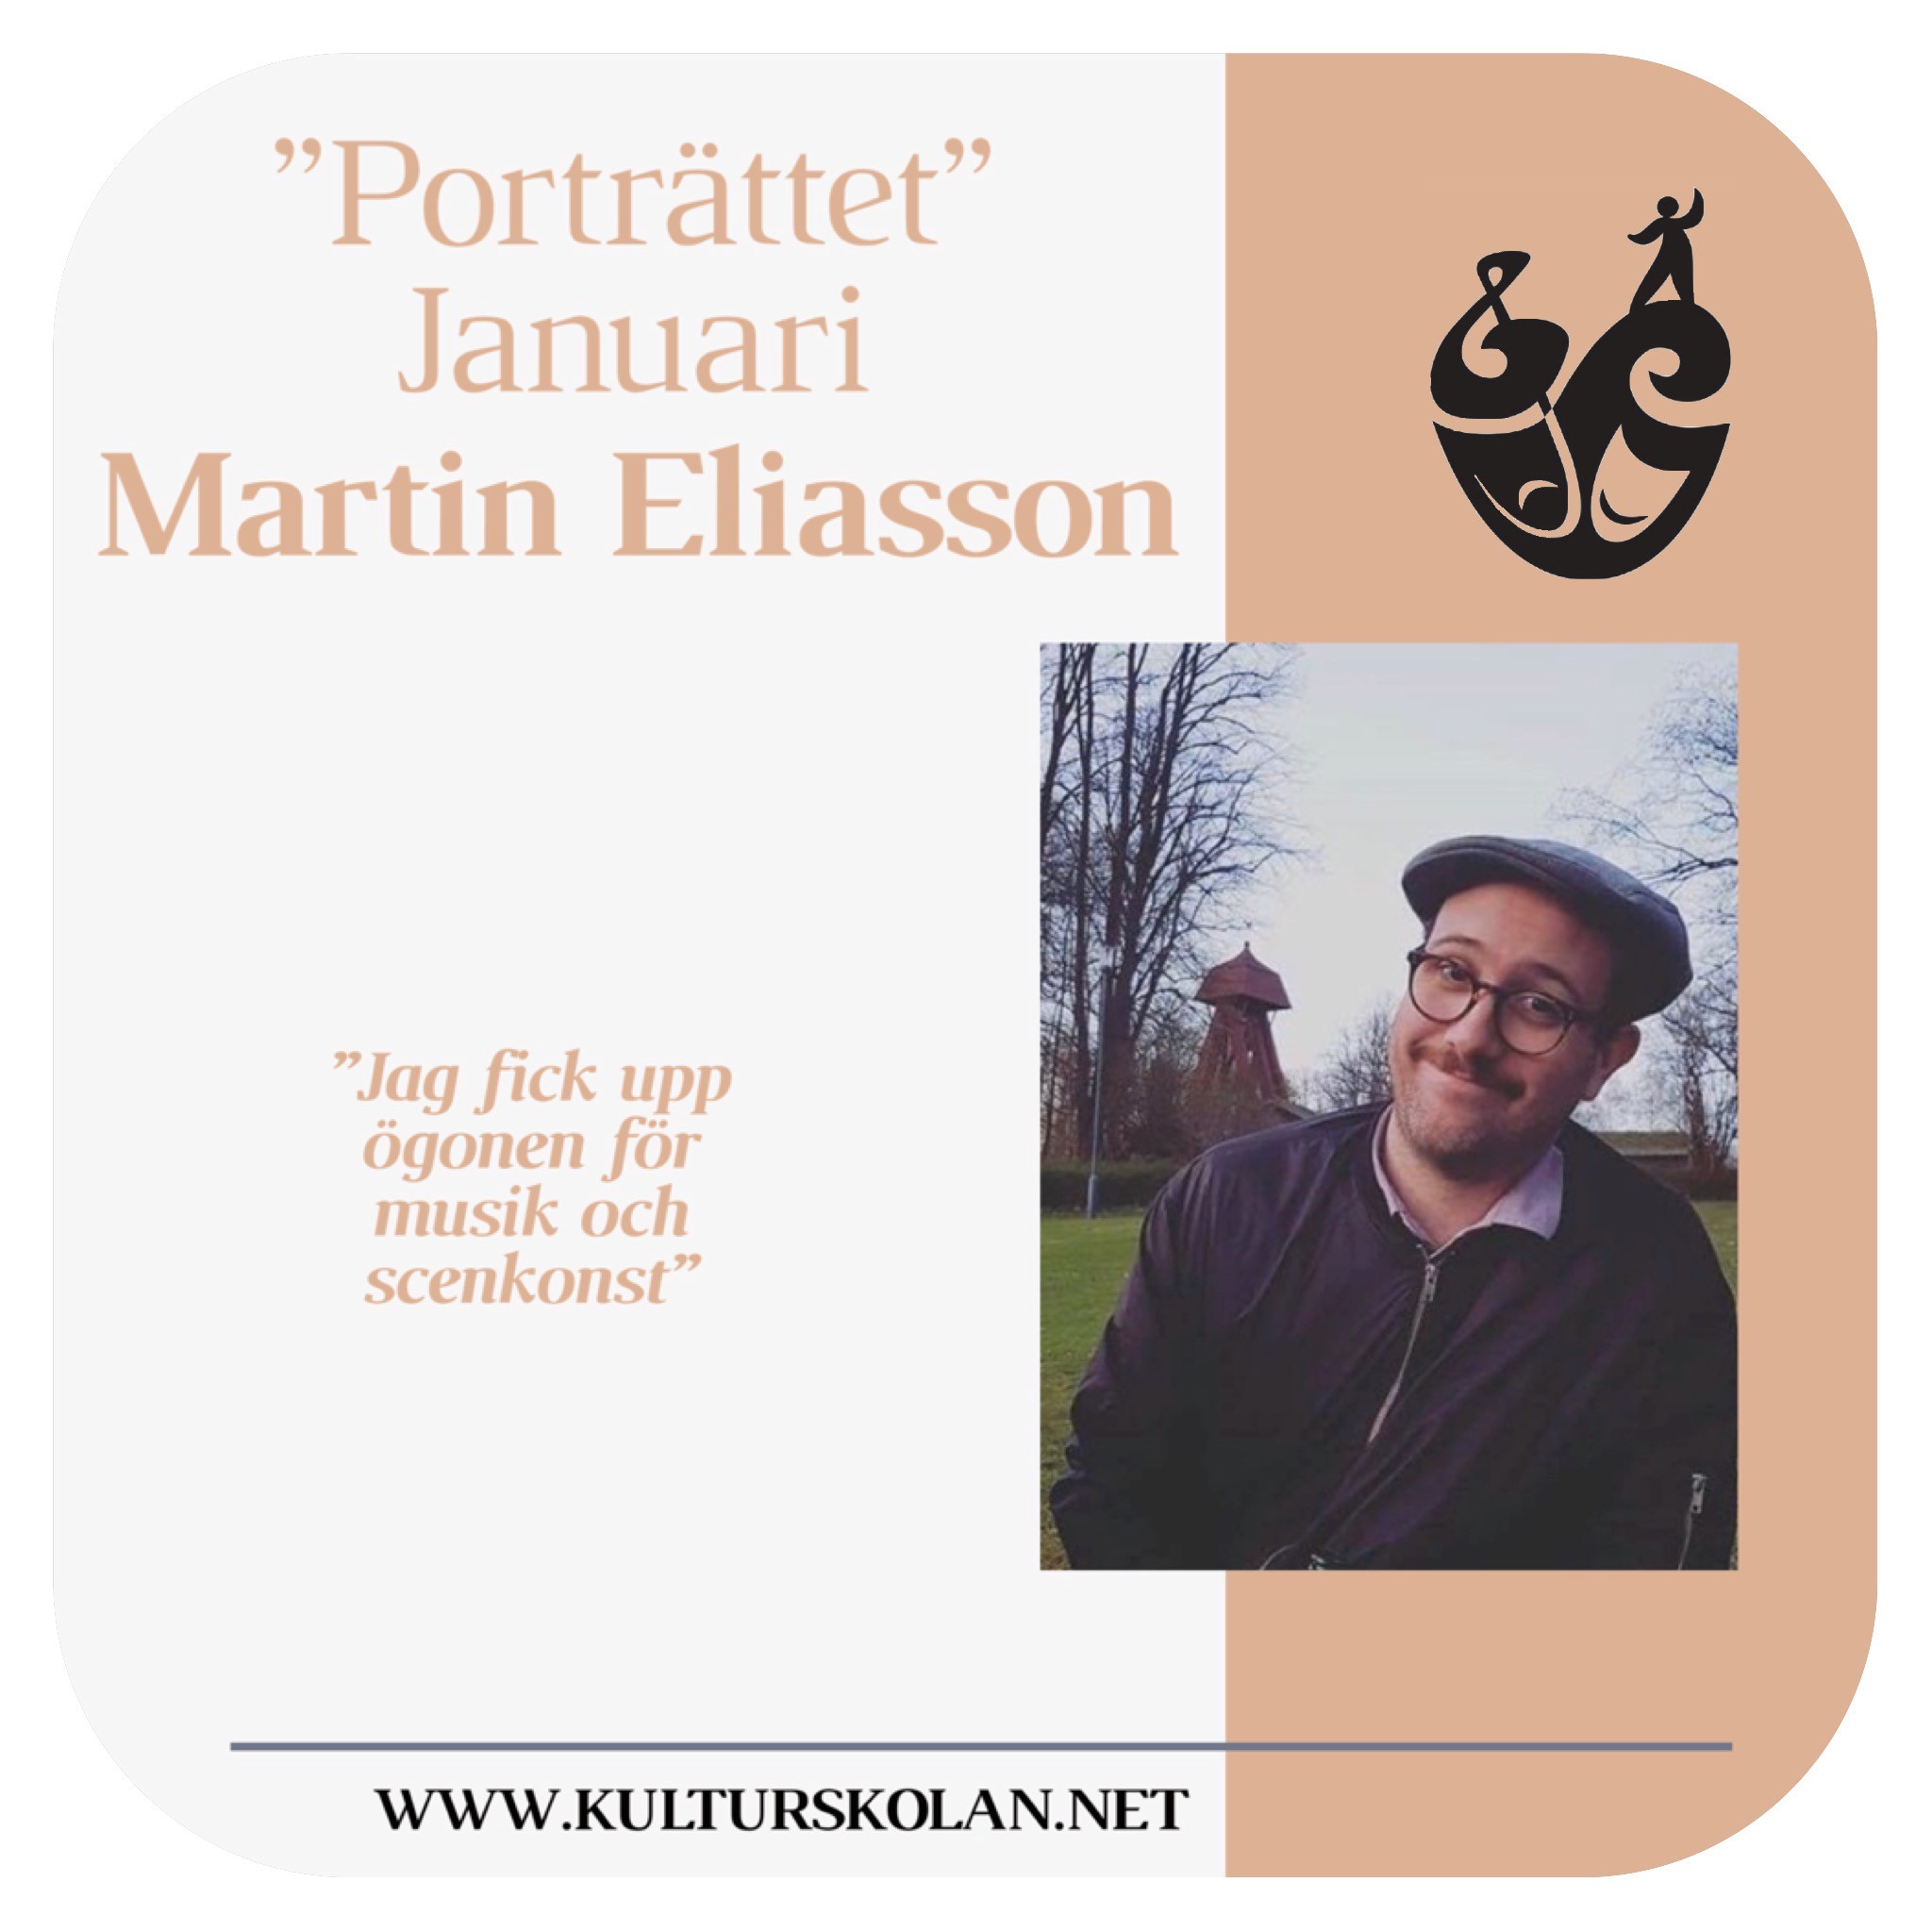 Martin Eliasson